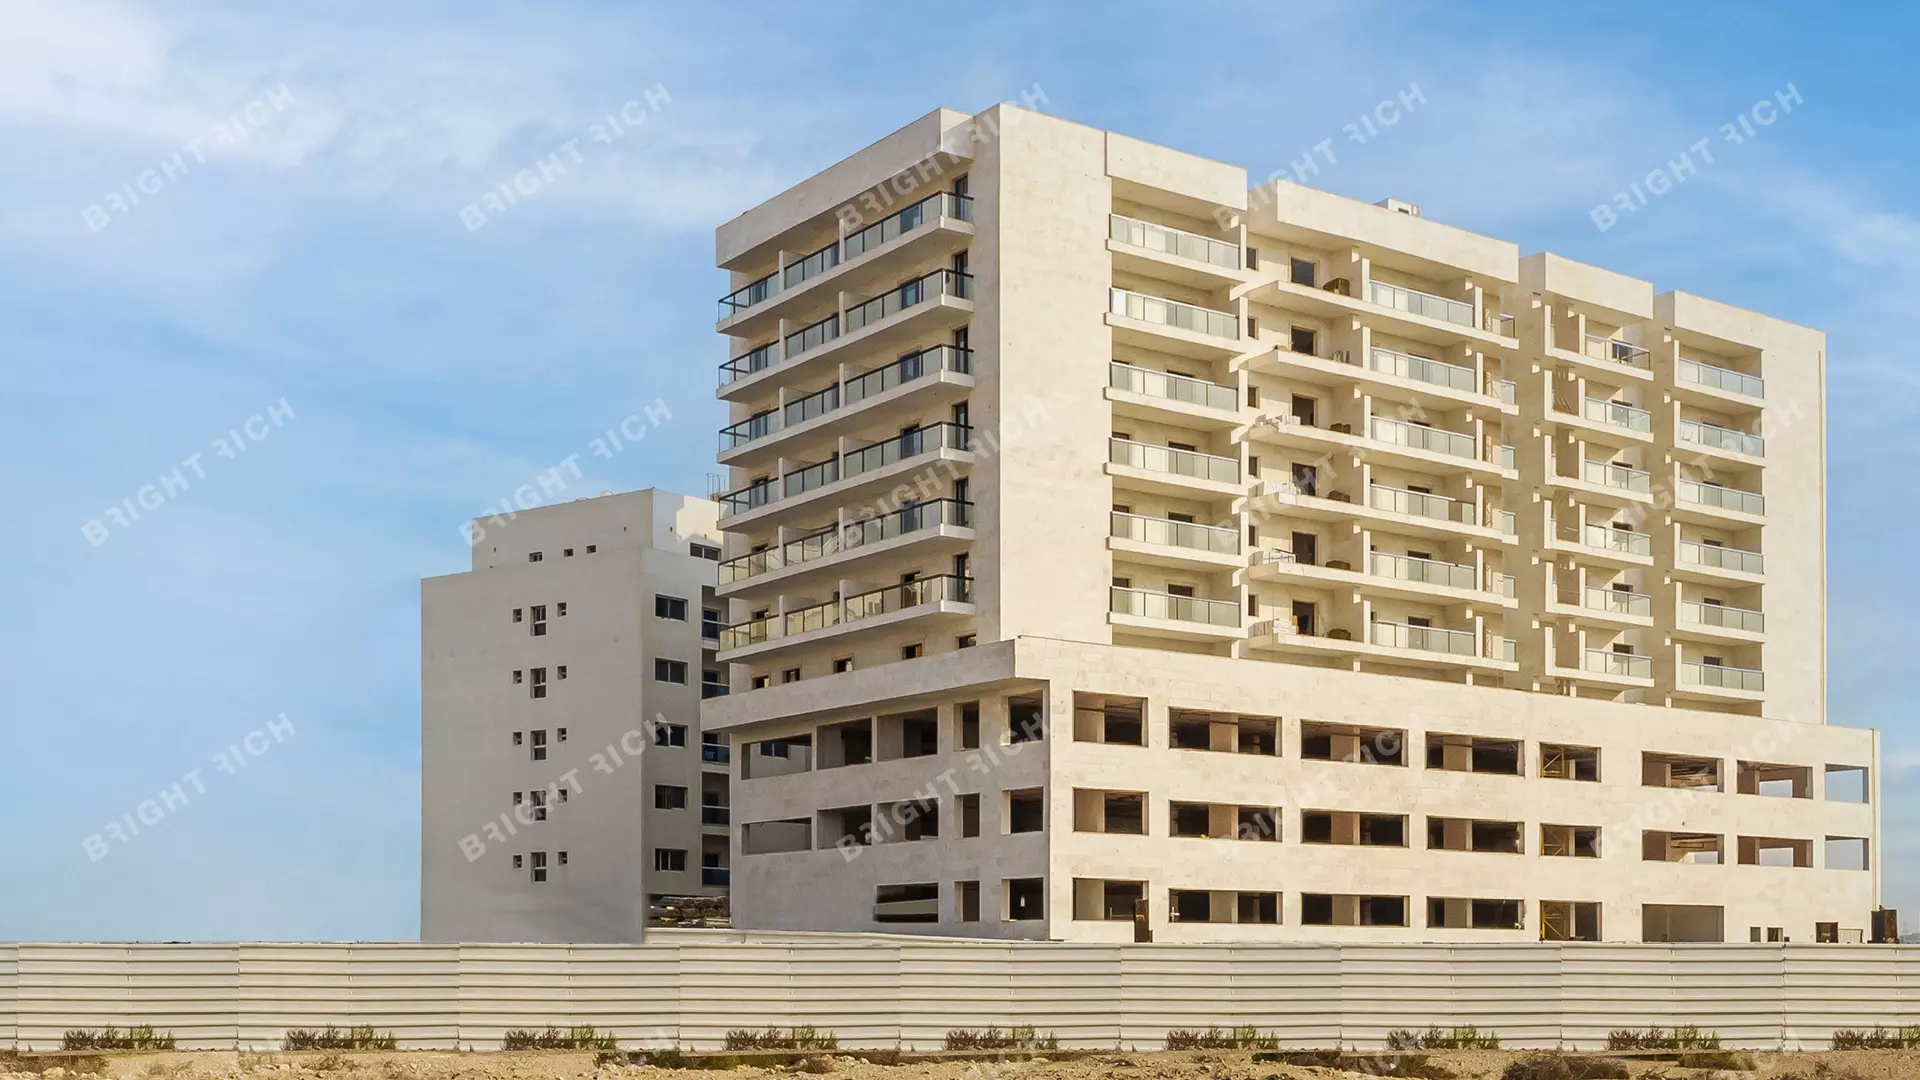 Equiti Apartments, apart complex in Dubai - 2